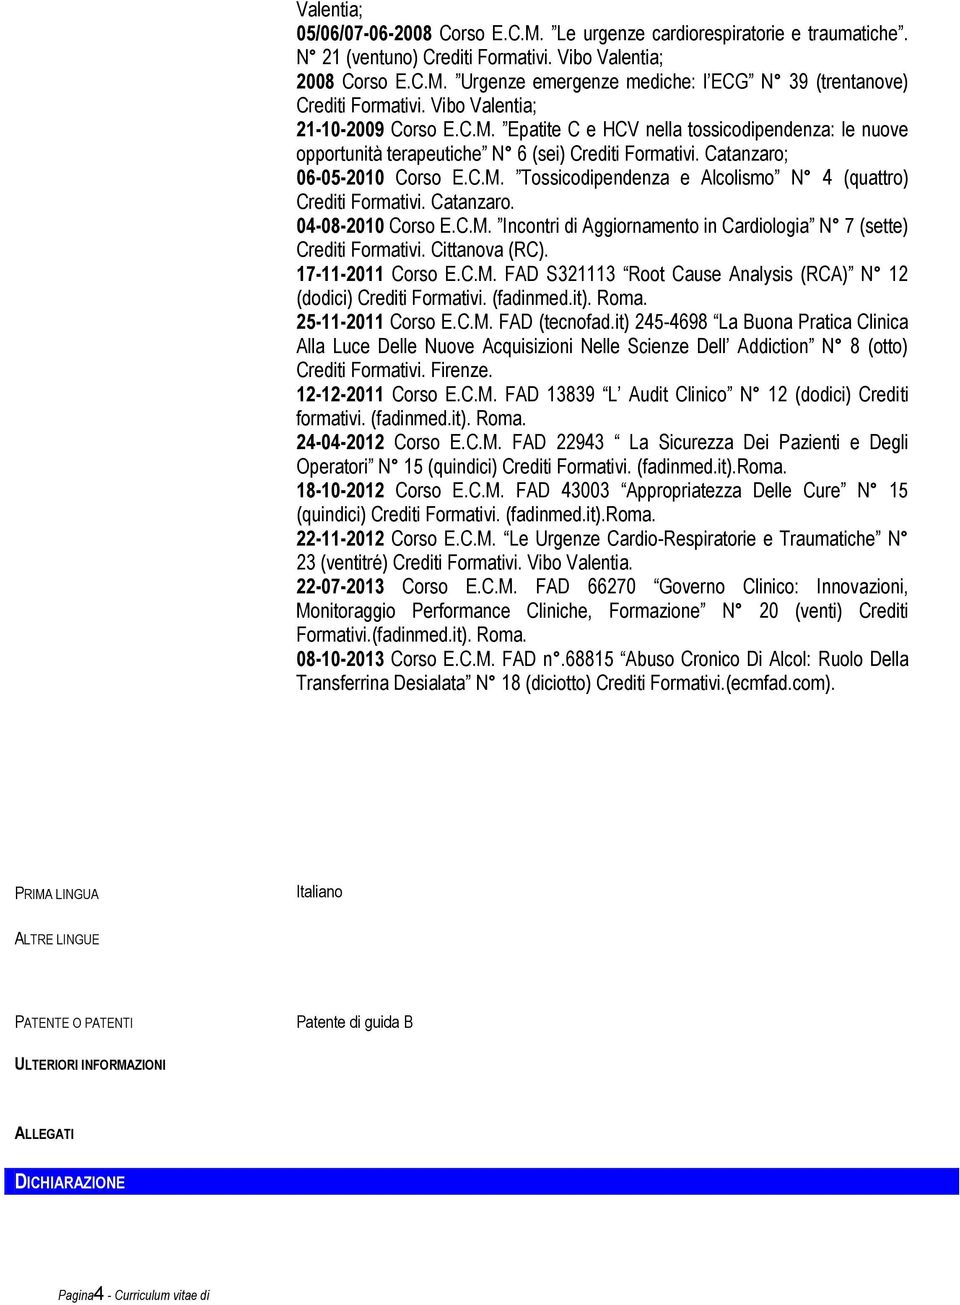 Catanzaro. 04-08-2010 Corso E.C.M. Incontri di Aggiornamento in Cardiologia N 7 (sette) Crediti Formativi. Cittanova (RC). 17-11-2011 Corso E.C.M. FAD S321113 Root Cause Analysis (RCA) N 12 (dodici) Crediti Formativi.